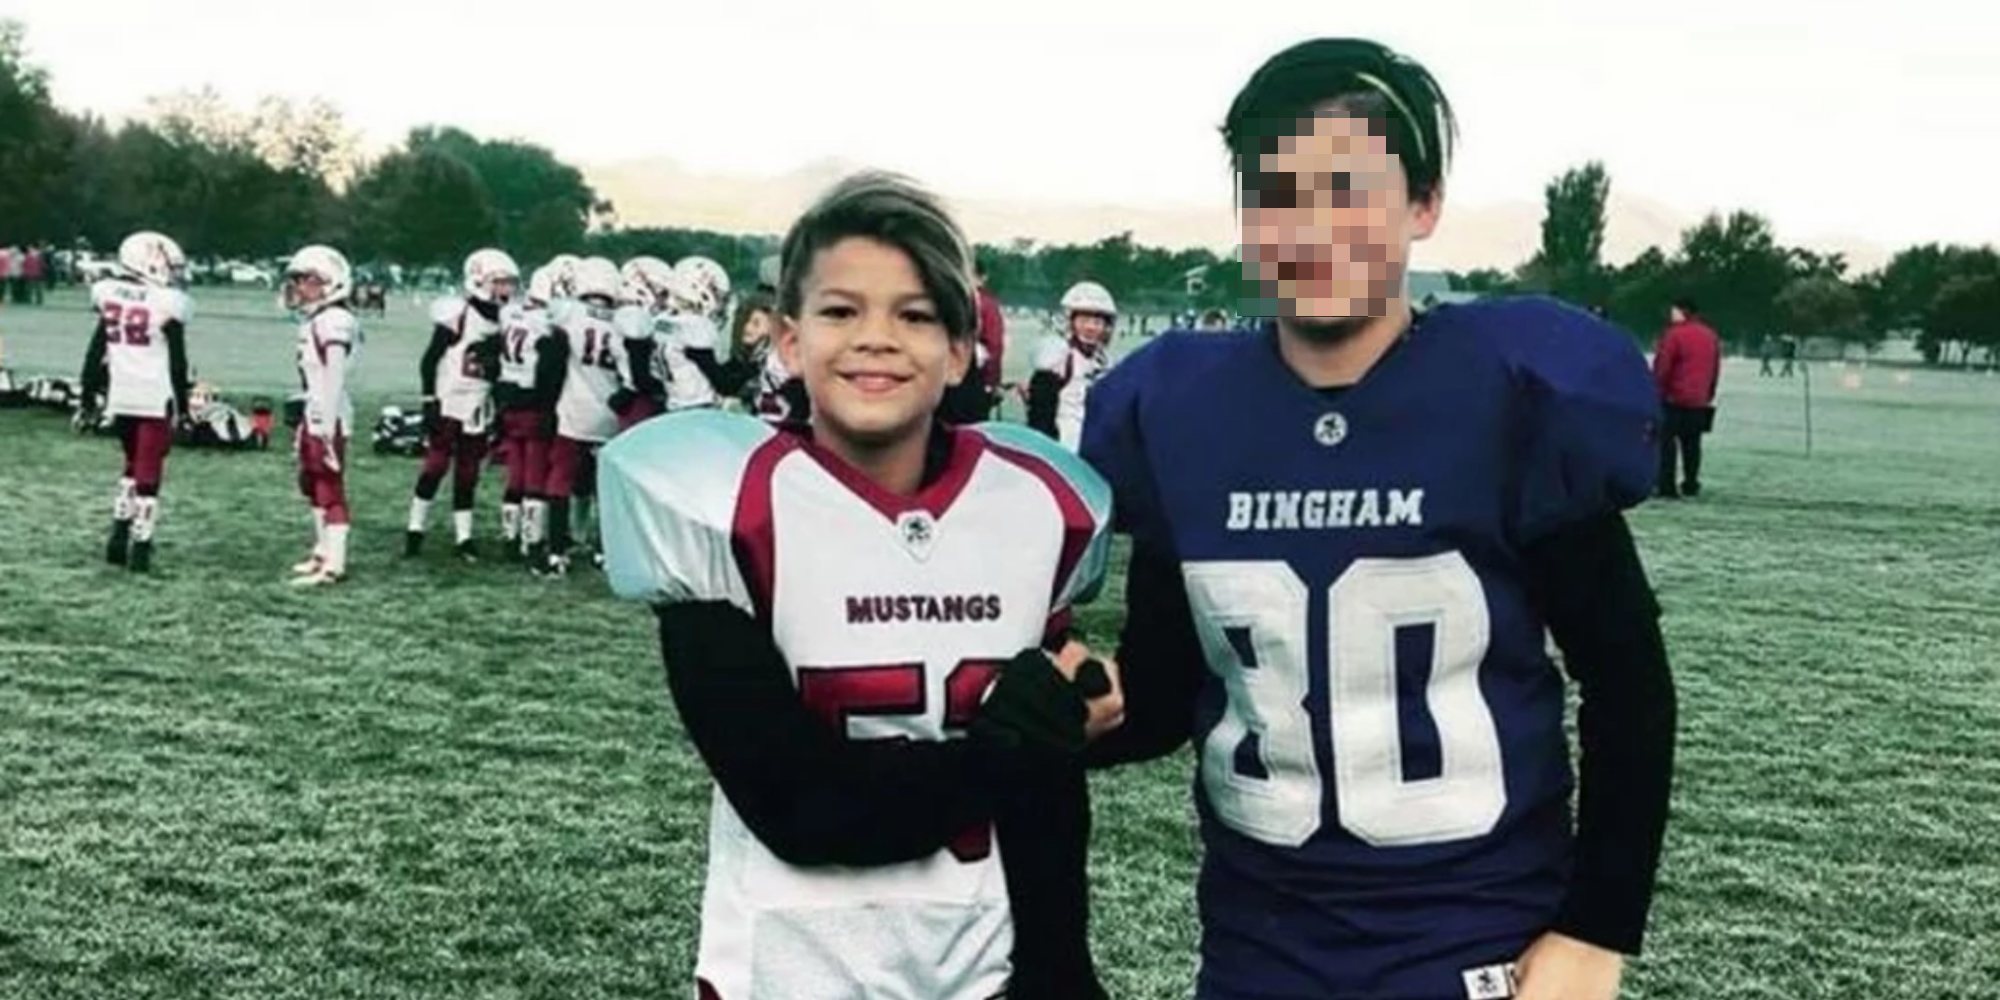 Muere un niño de 12 años por jugar al 'juego de la asfixia' con sus amigos